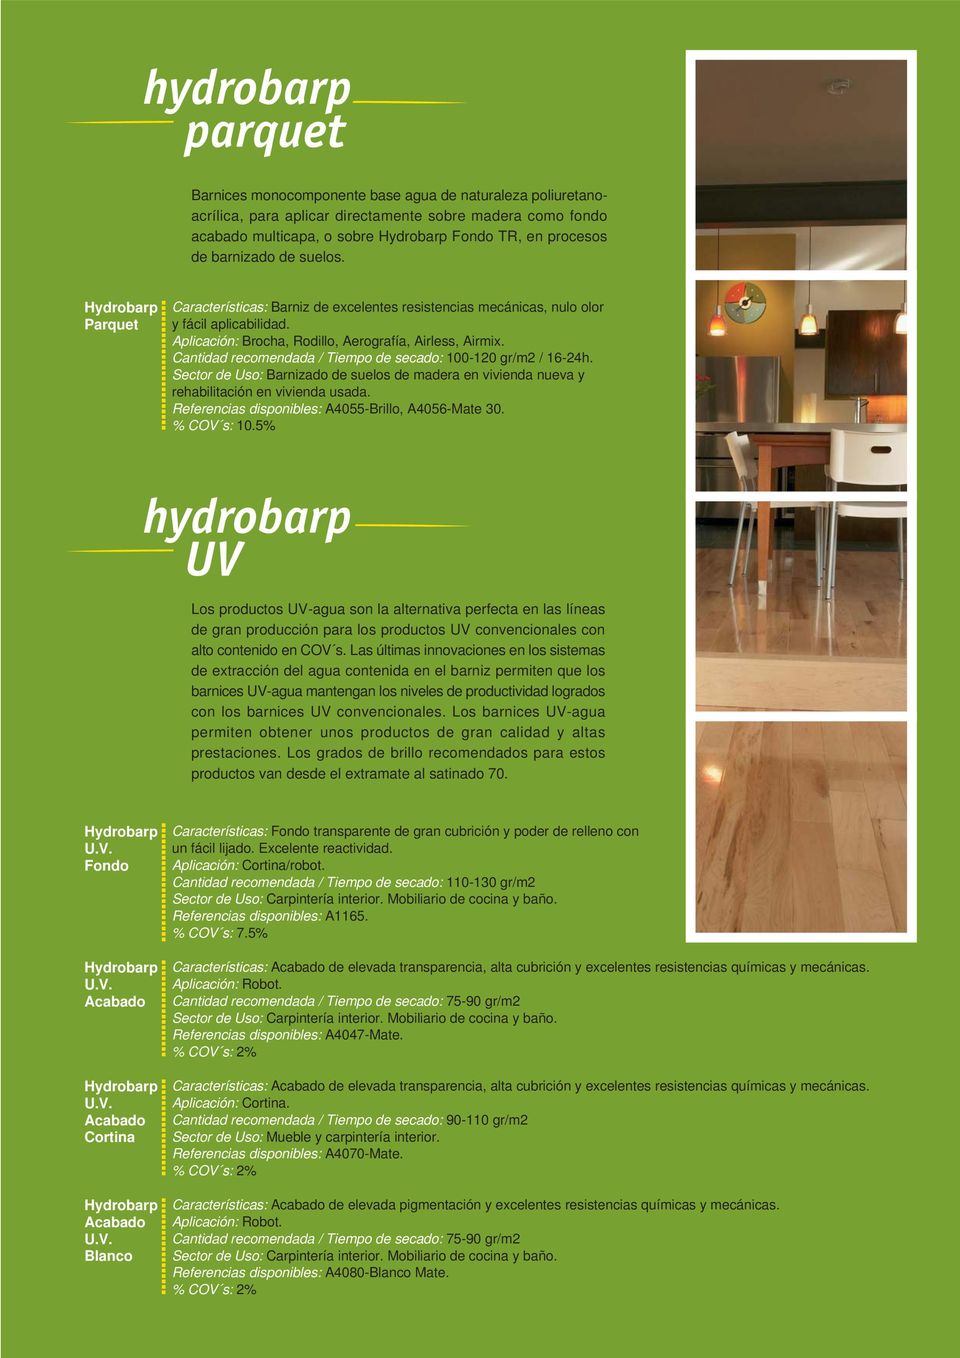 Cantidad recomendada / Tiempo de secado: 100-120 gr/m2 / 16-24h. Sector de Uso: Barnizado de suelos de madera en vivienda nueva y rehabilitación en vivienda usada.